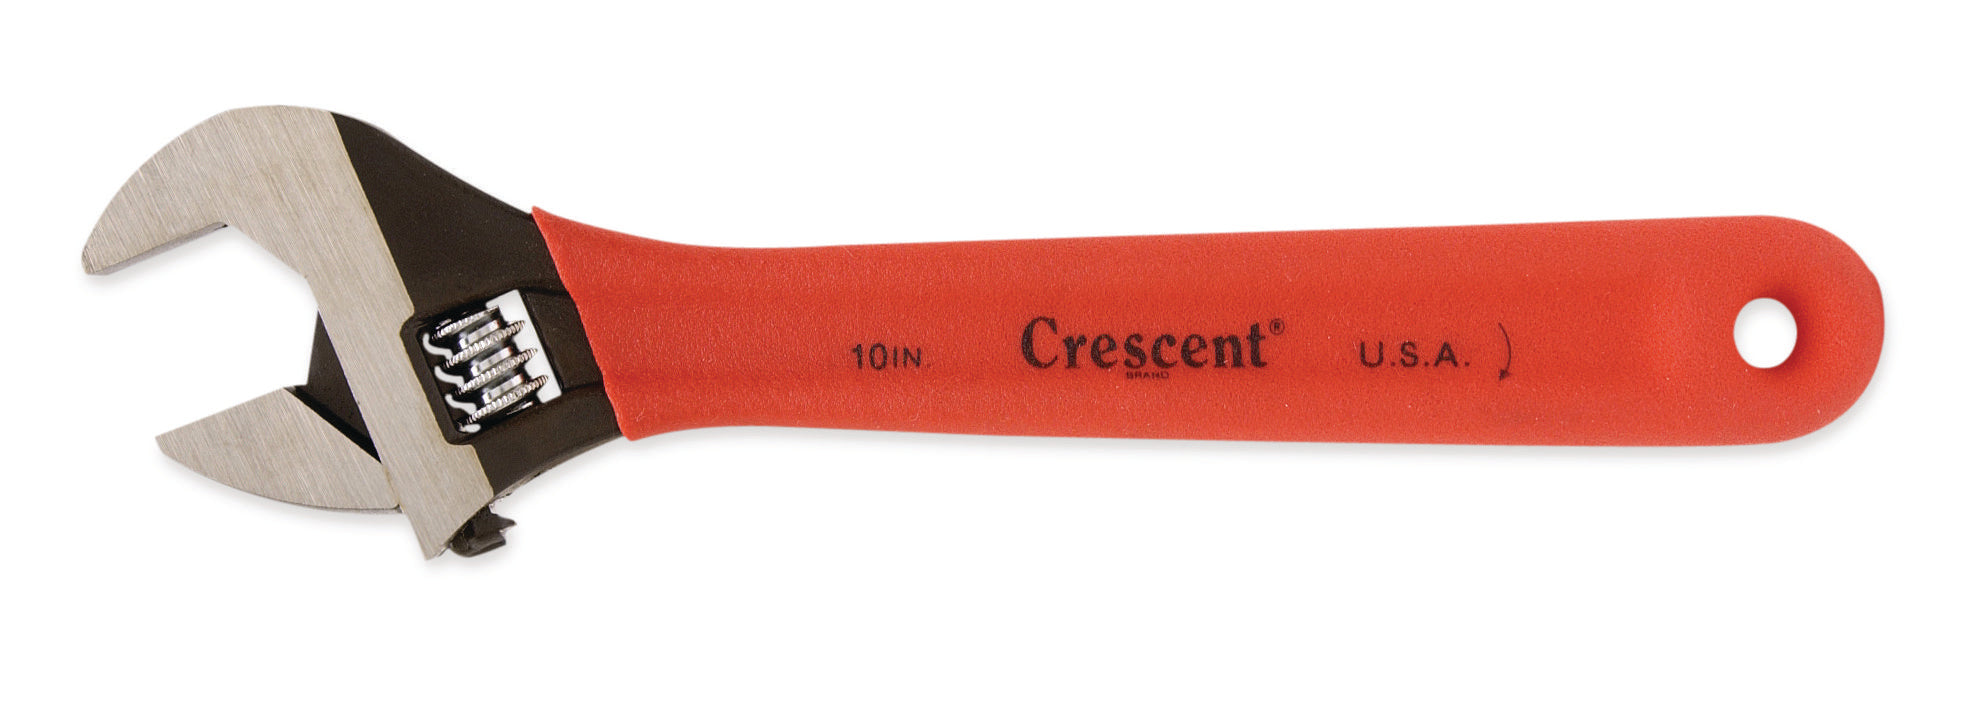 Crescent Tools - 8